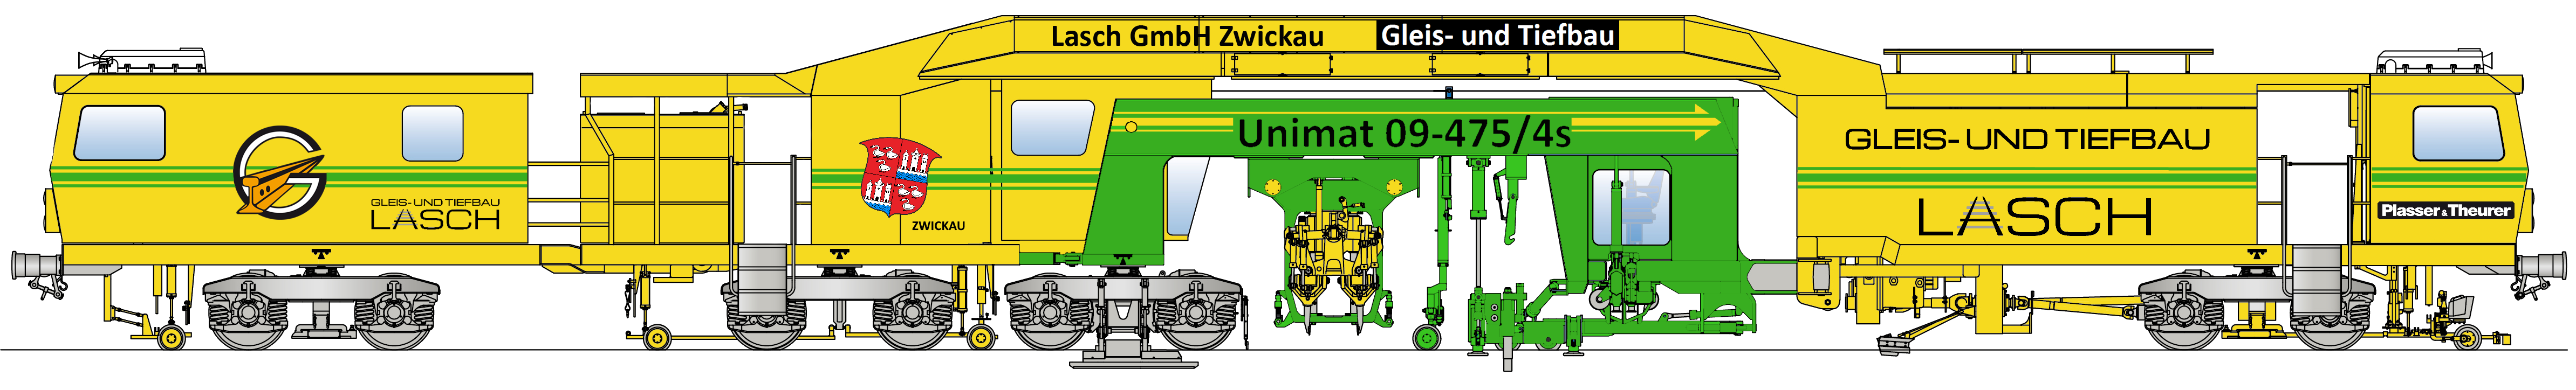 Universalstopfmaschine Unimat 09-475/4S (Plasser & Theurer)